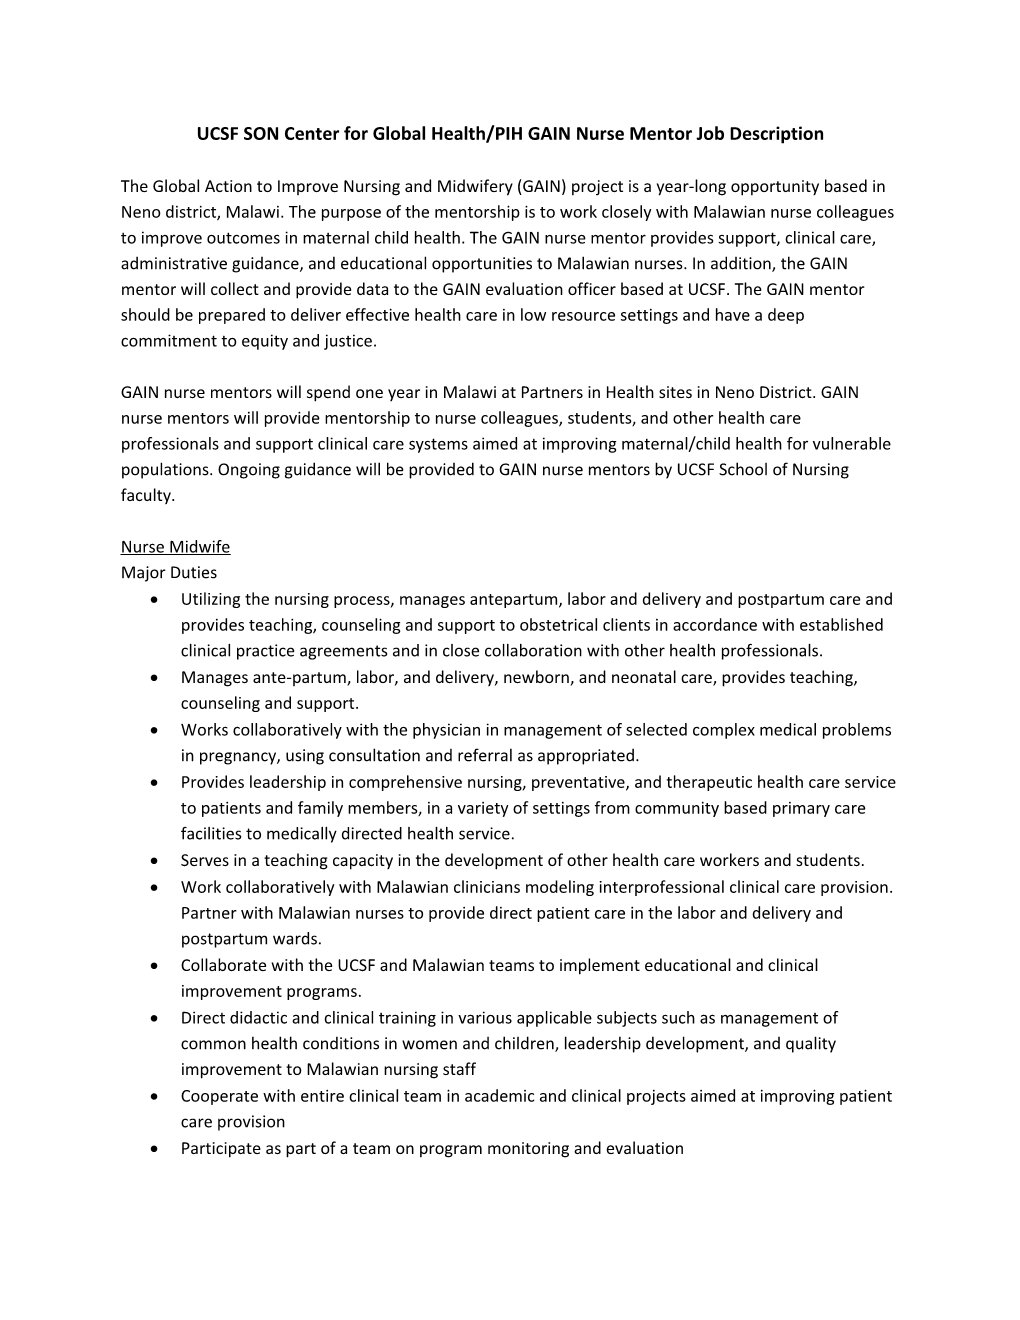 UCSF Soncenter for Global Health/PIHGAIN Nurse Mentor Job Description